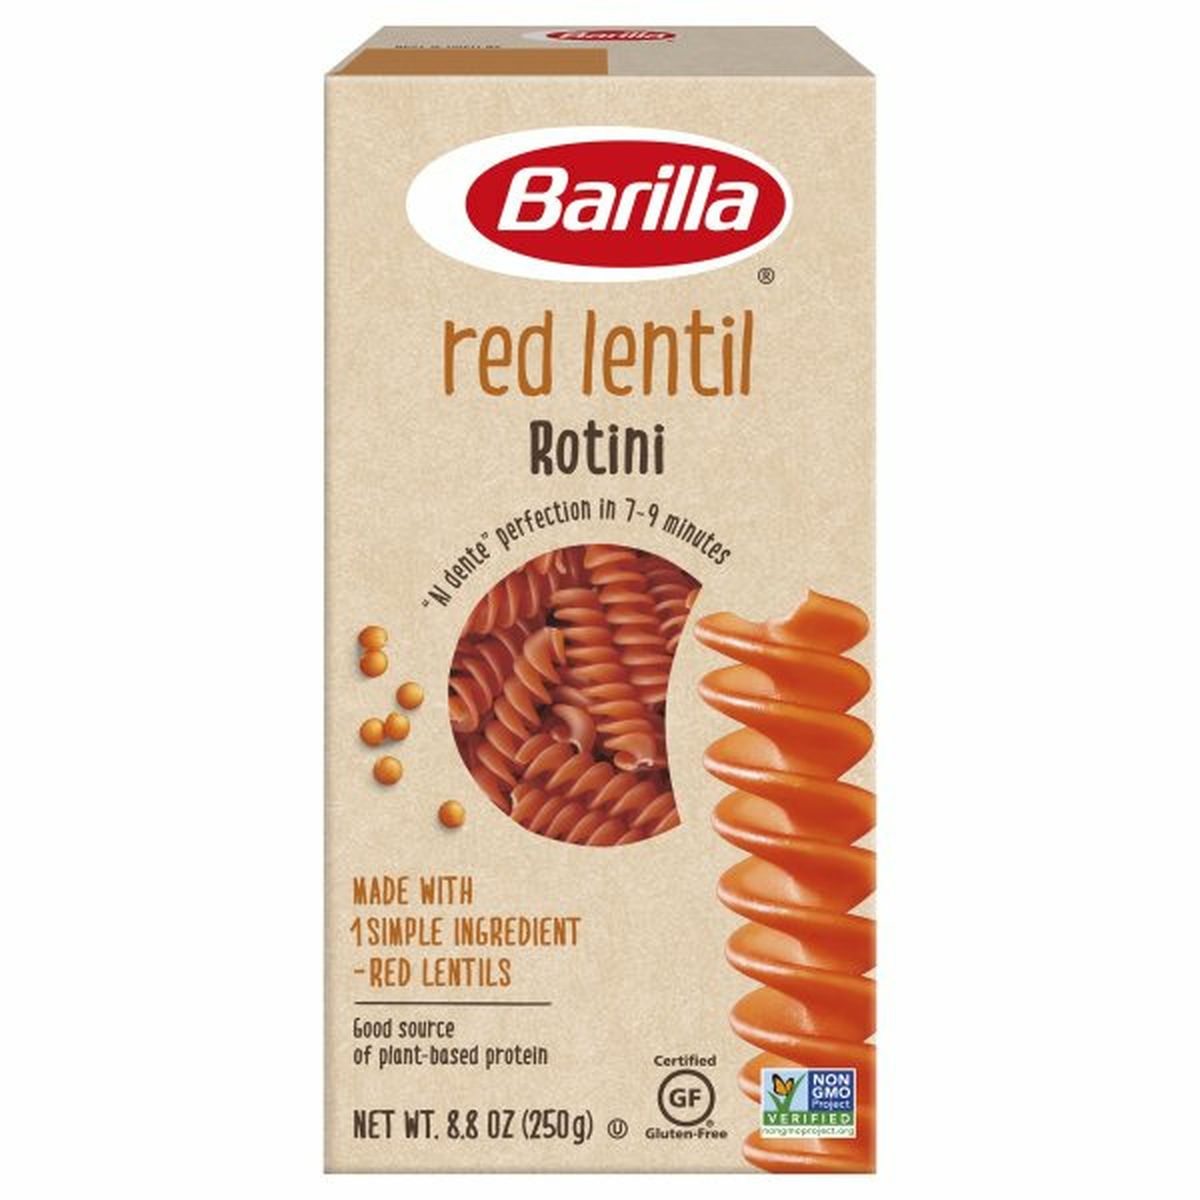 Calories in Barillas Rotini, Red Lentil